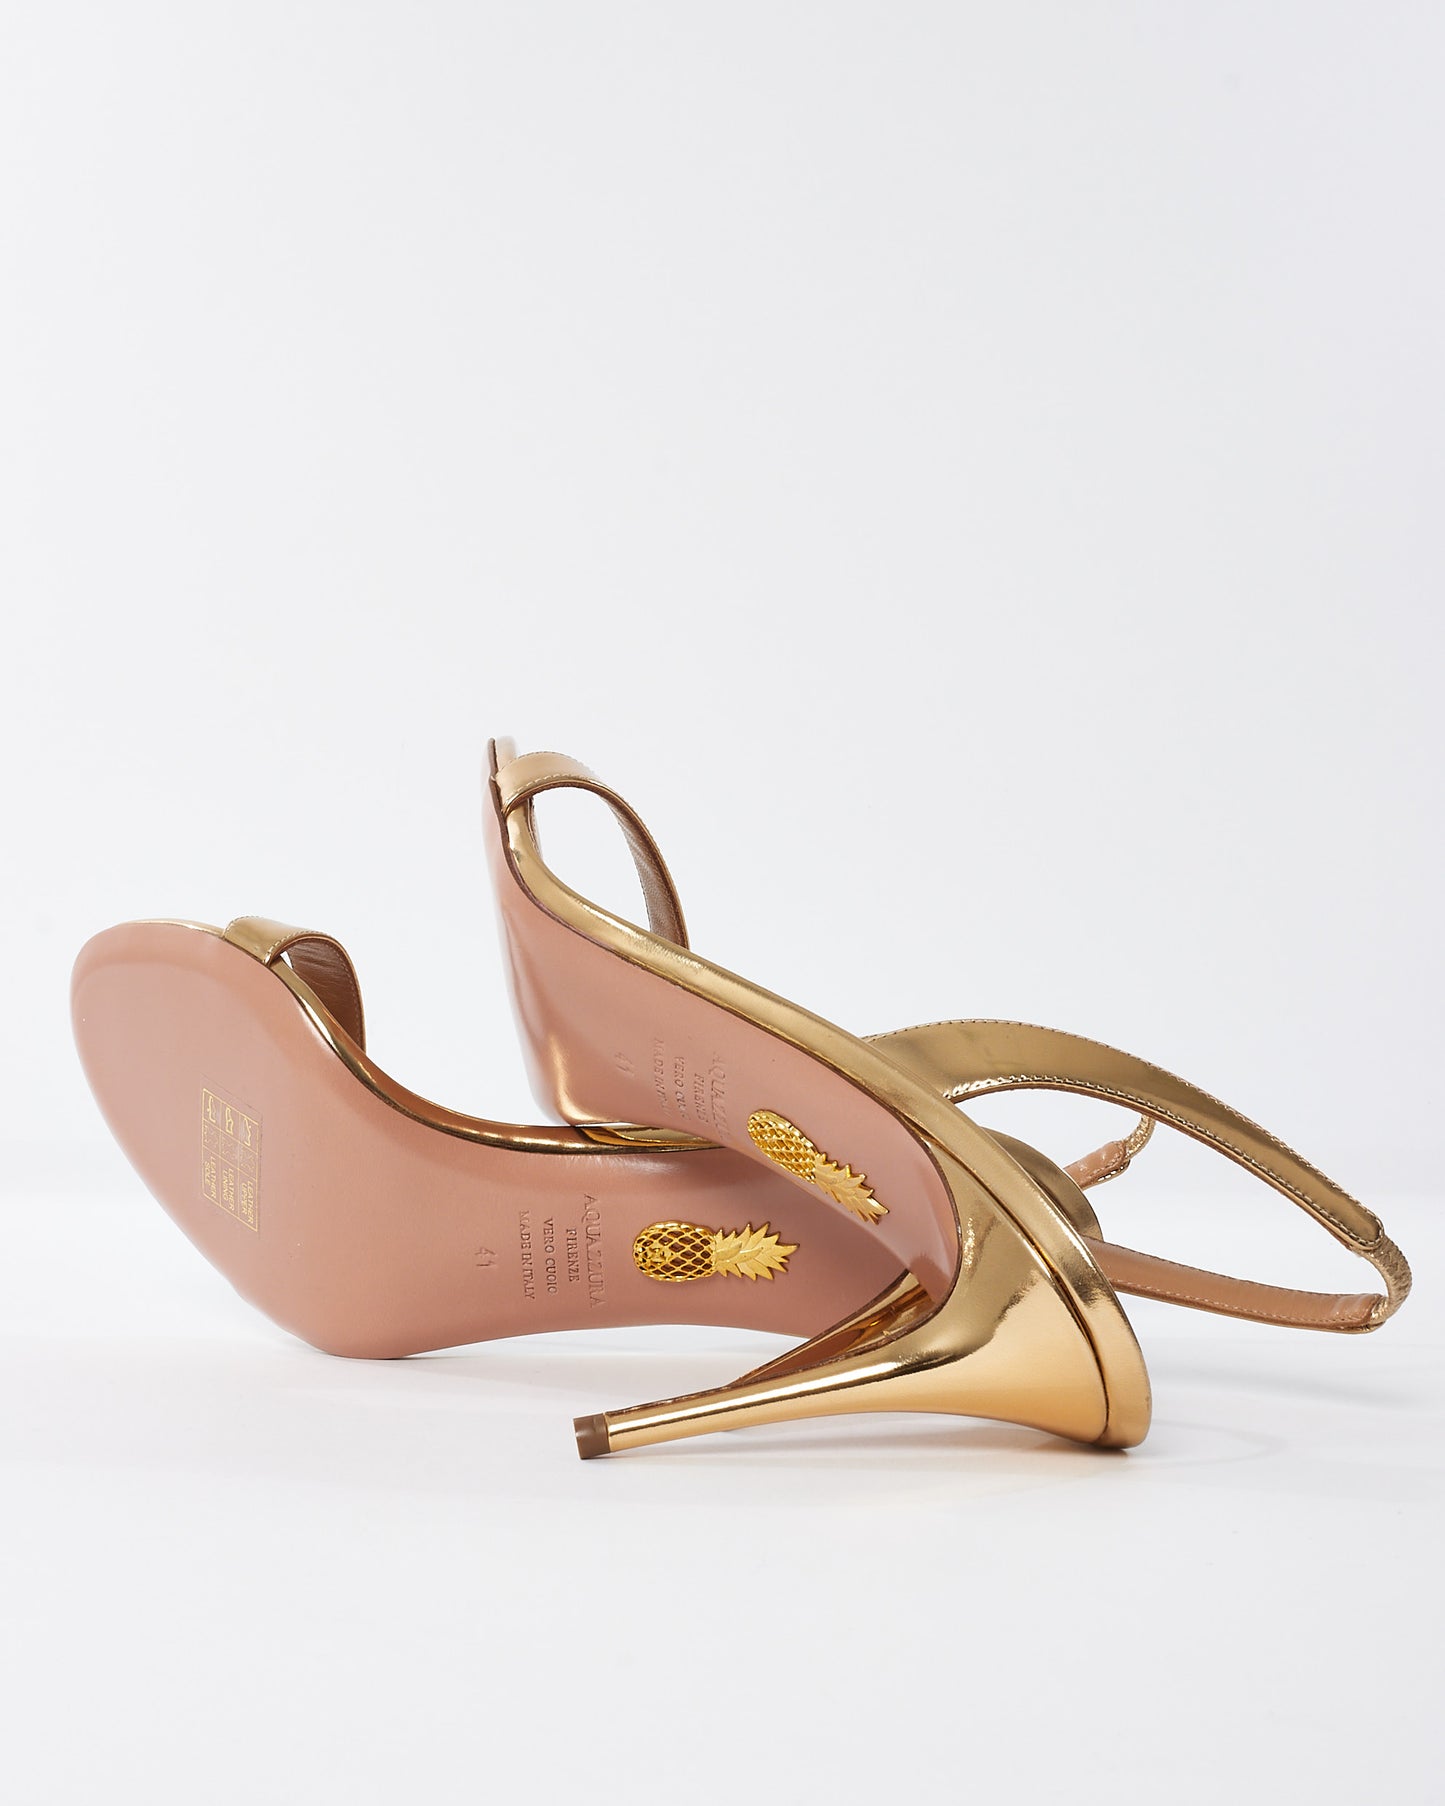 Aquazzura Gold Leather So Nude 85mm Stiletto Sandals - 41